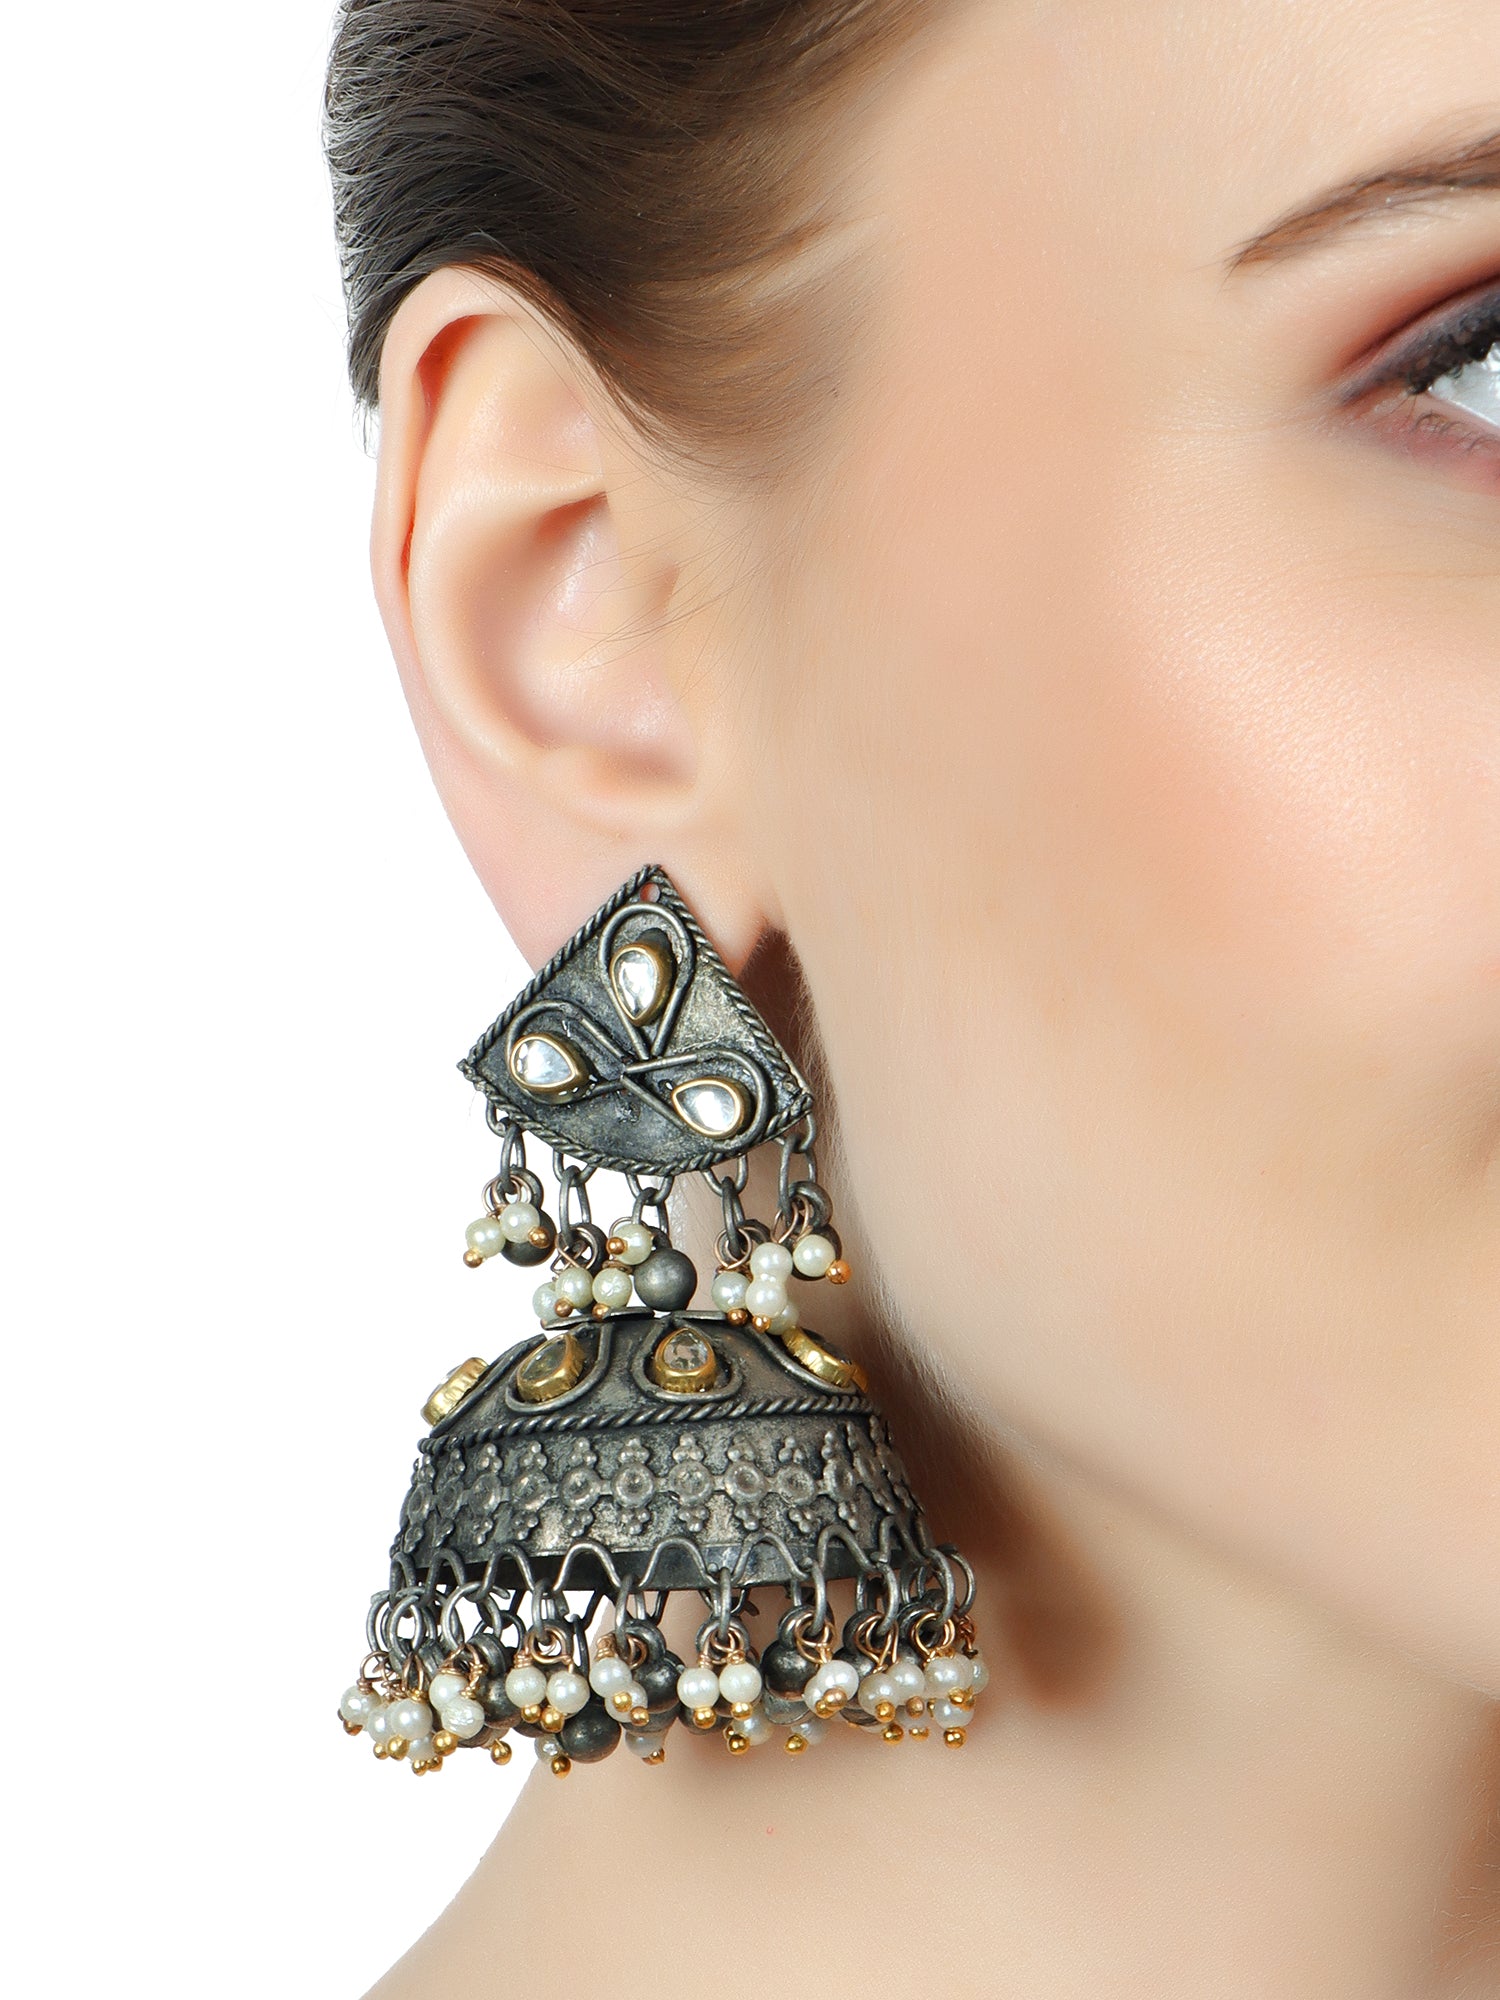 Zisat earrings